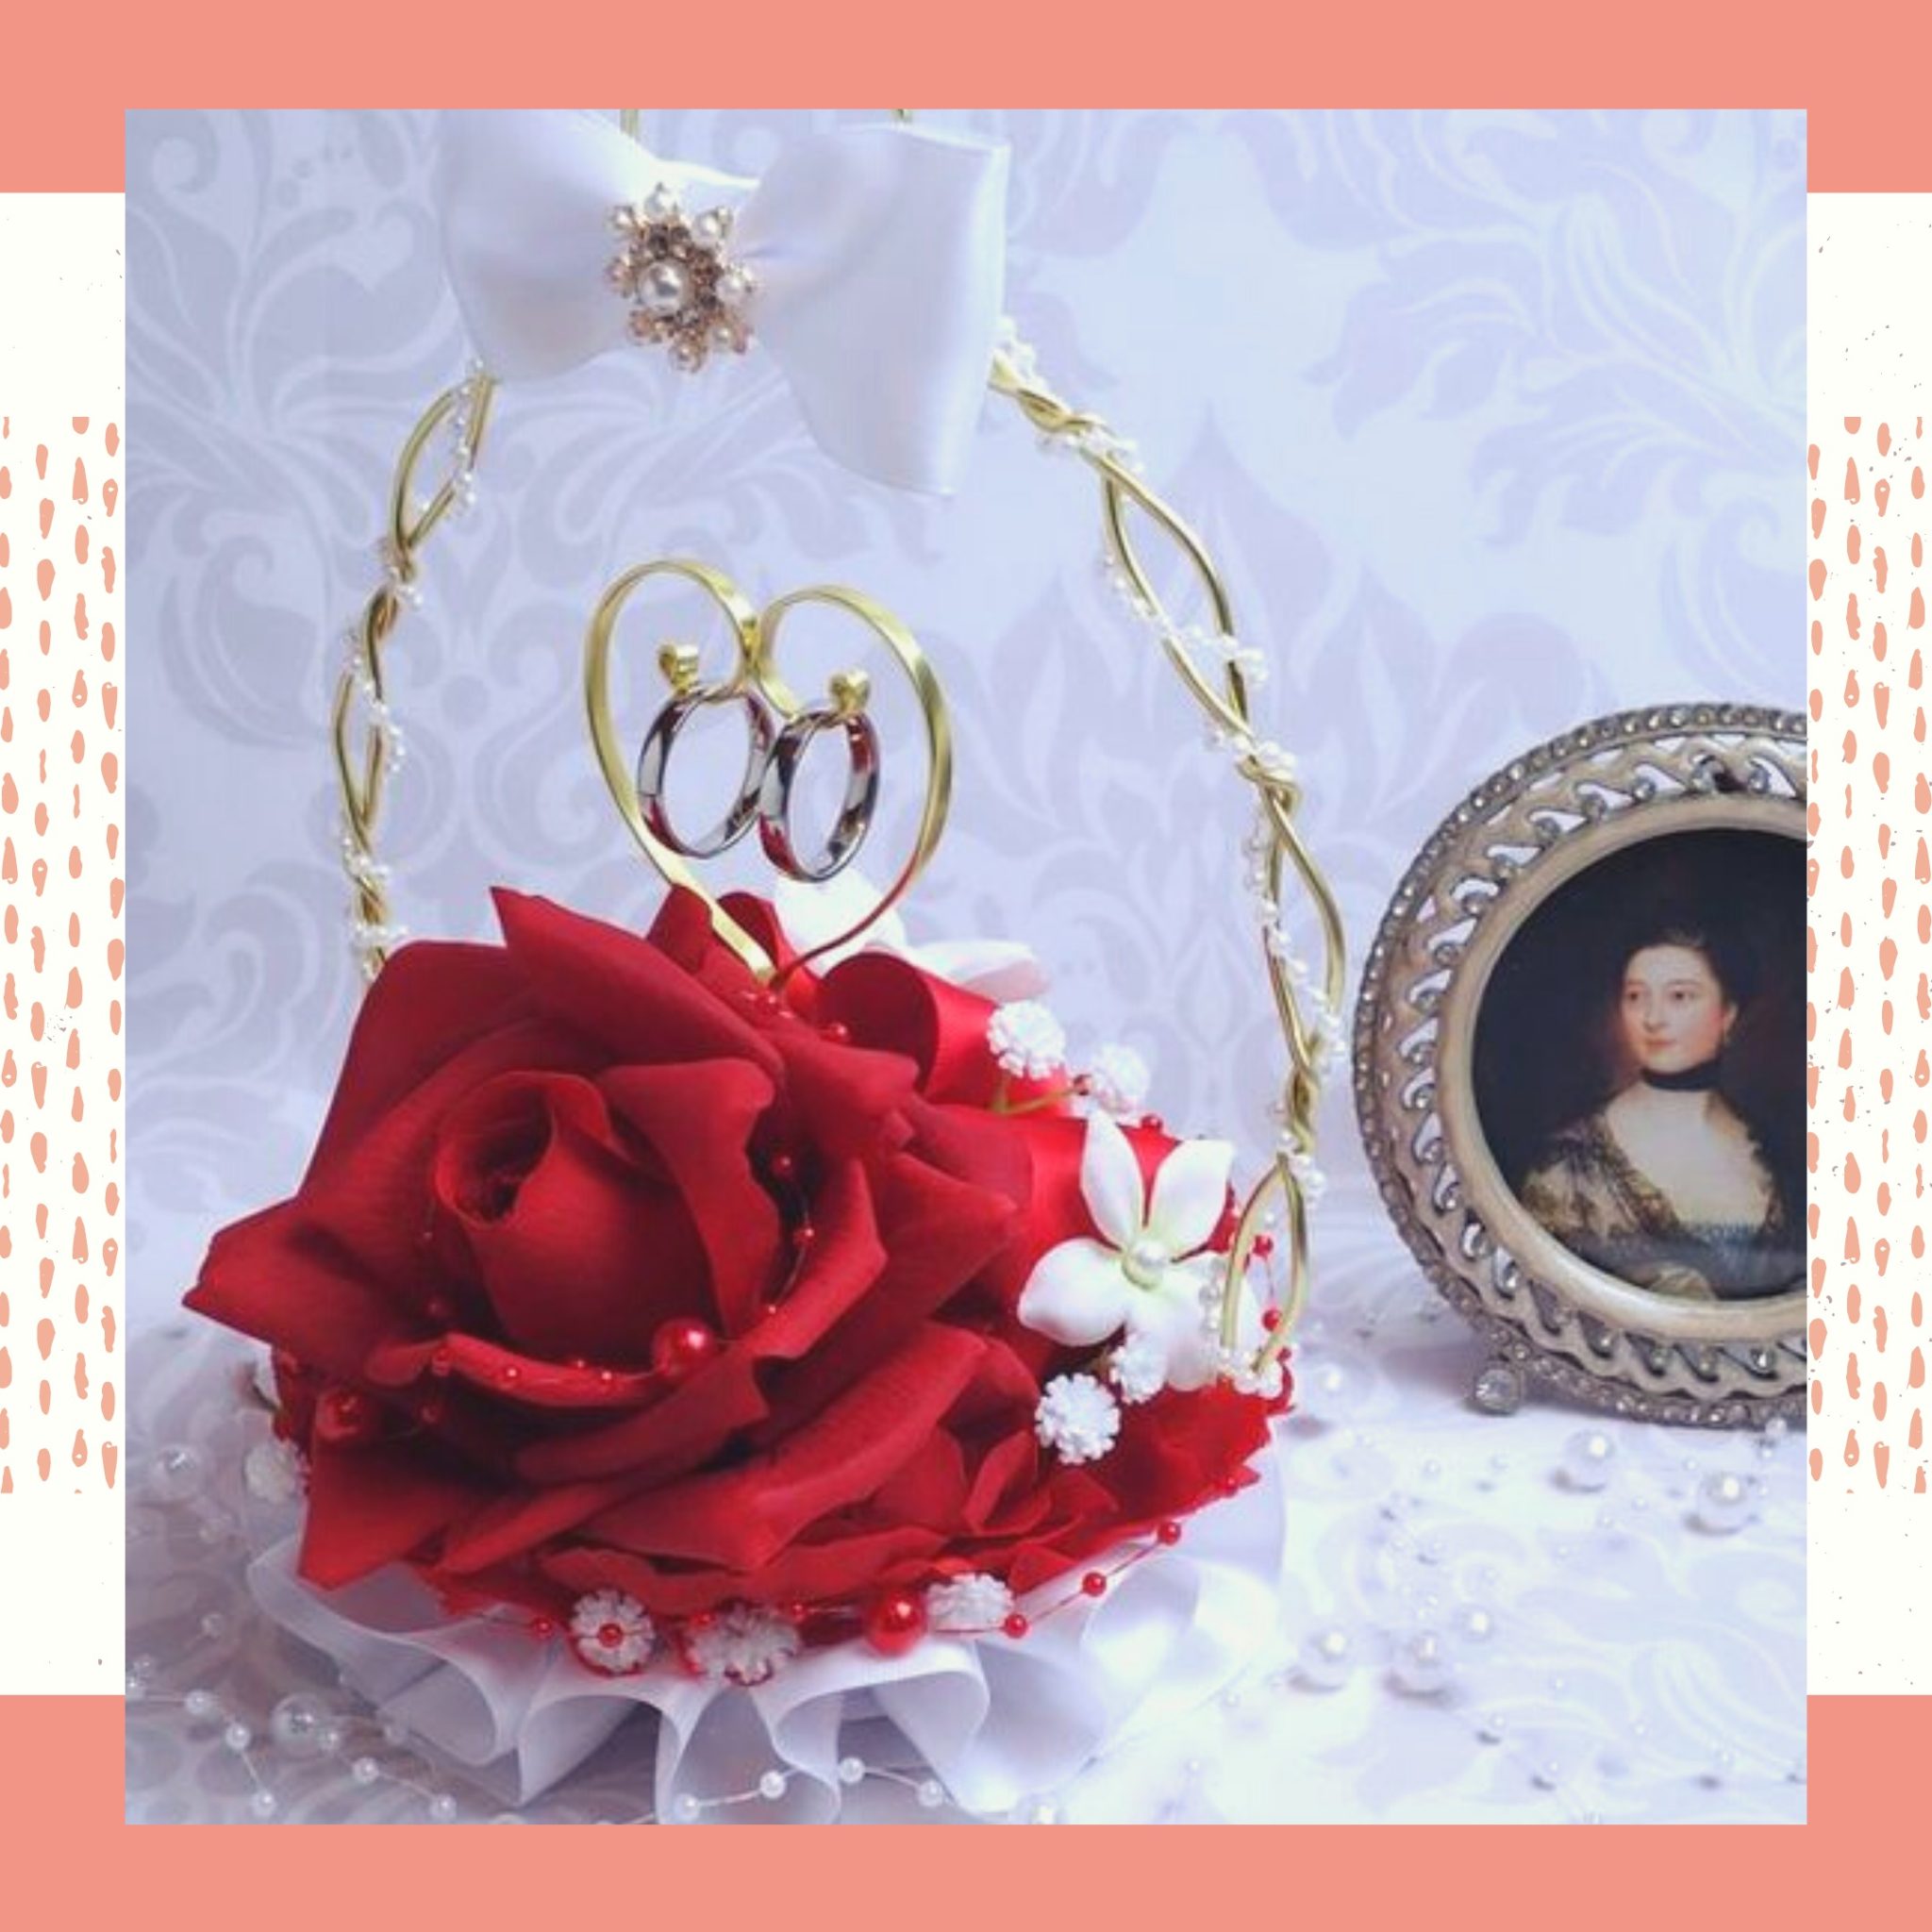 Porta alianças feito de cesta dourada com detalhes em pérolas, laço branco e uma linda flor vermelha